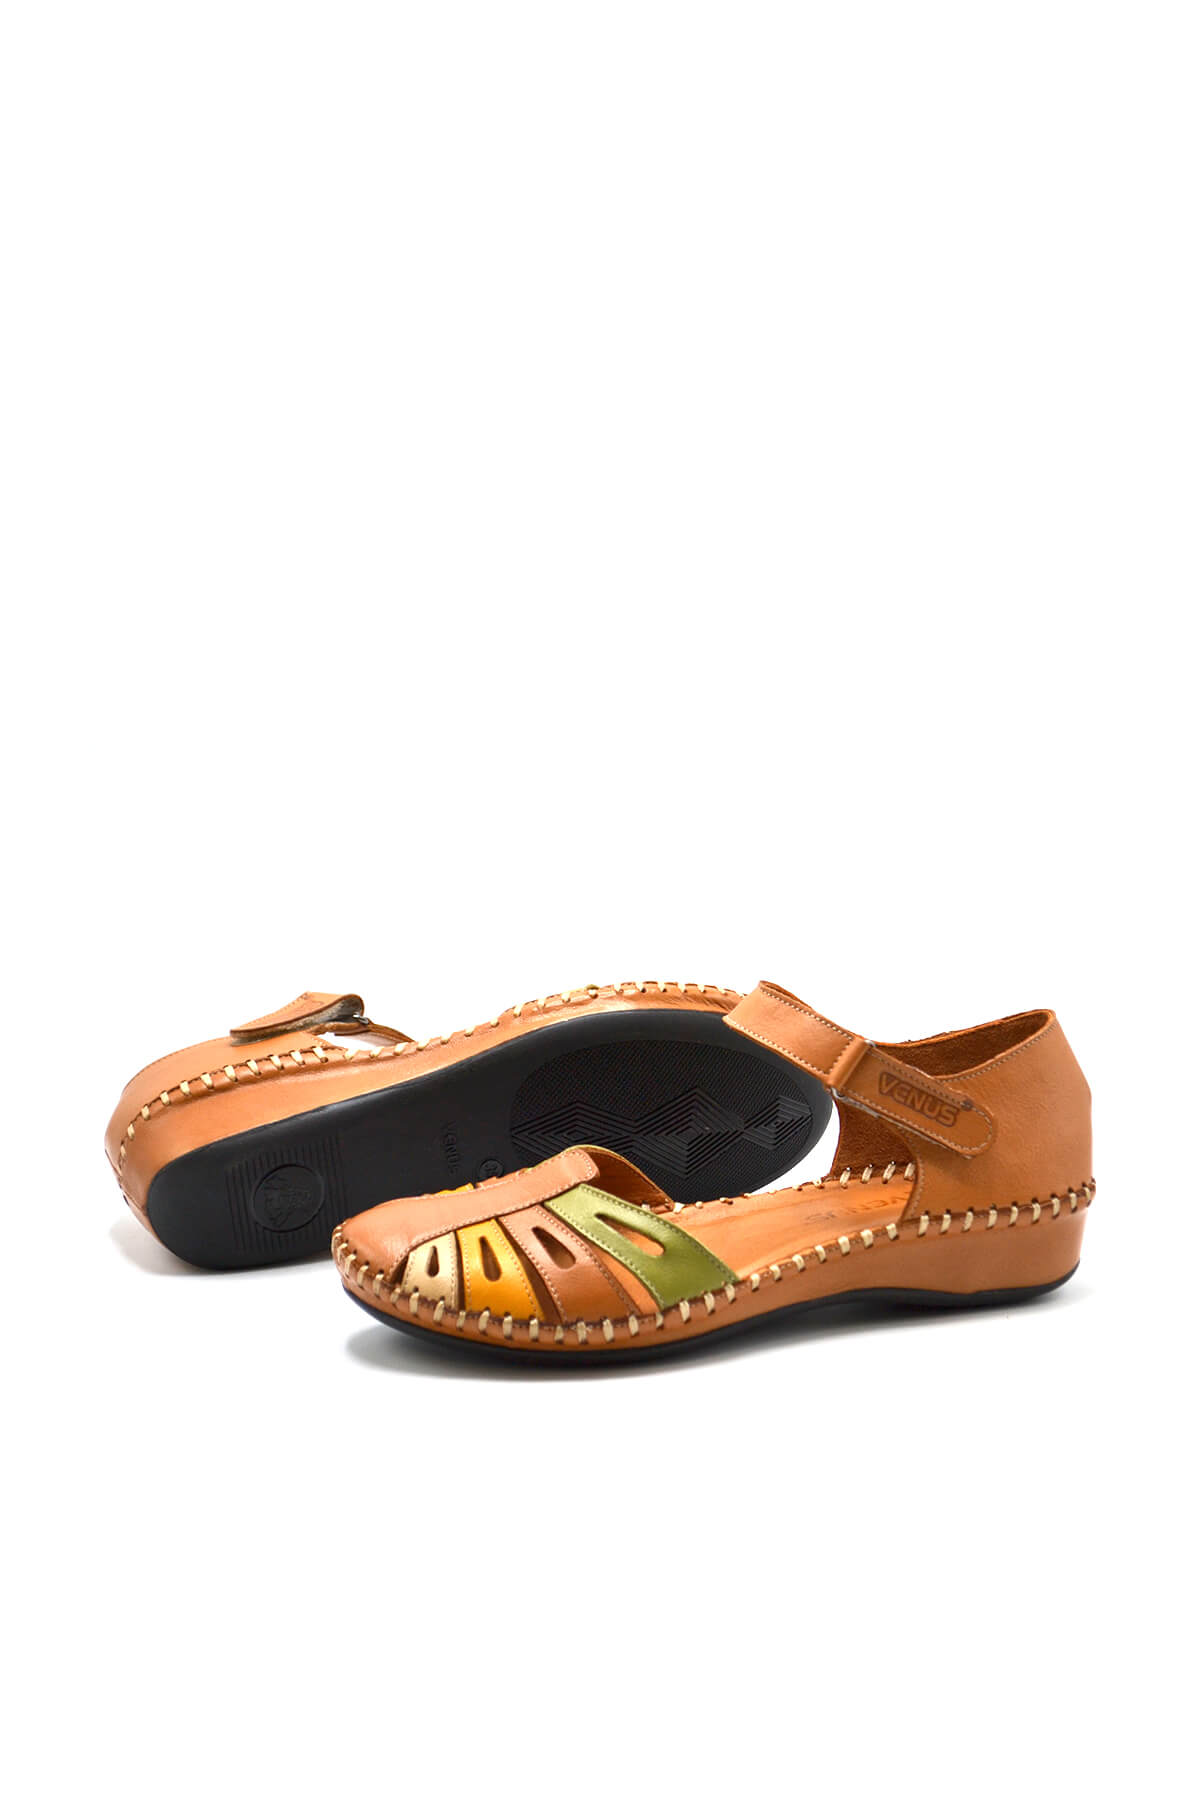 Kadın Comfort Deri Sandalet Taba 23033318Y - Thumbnail